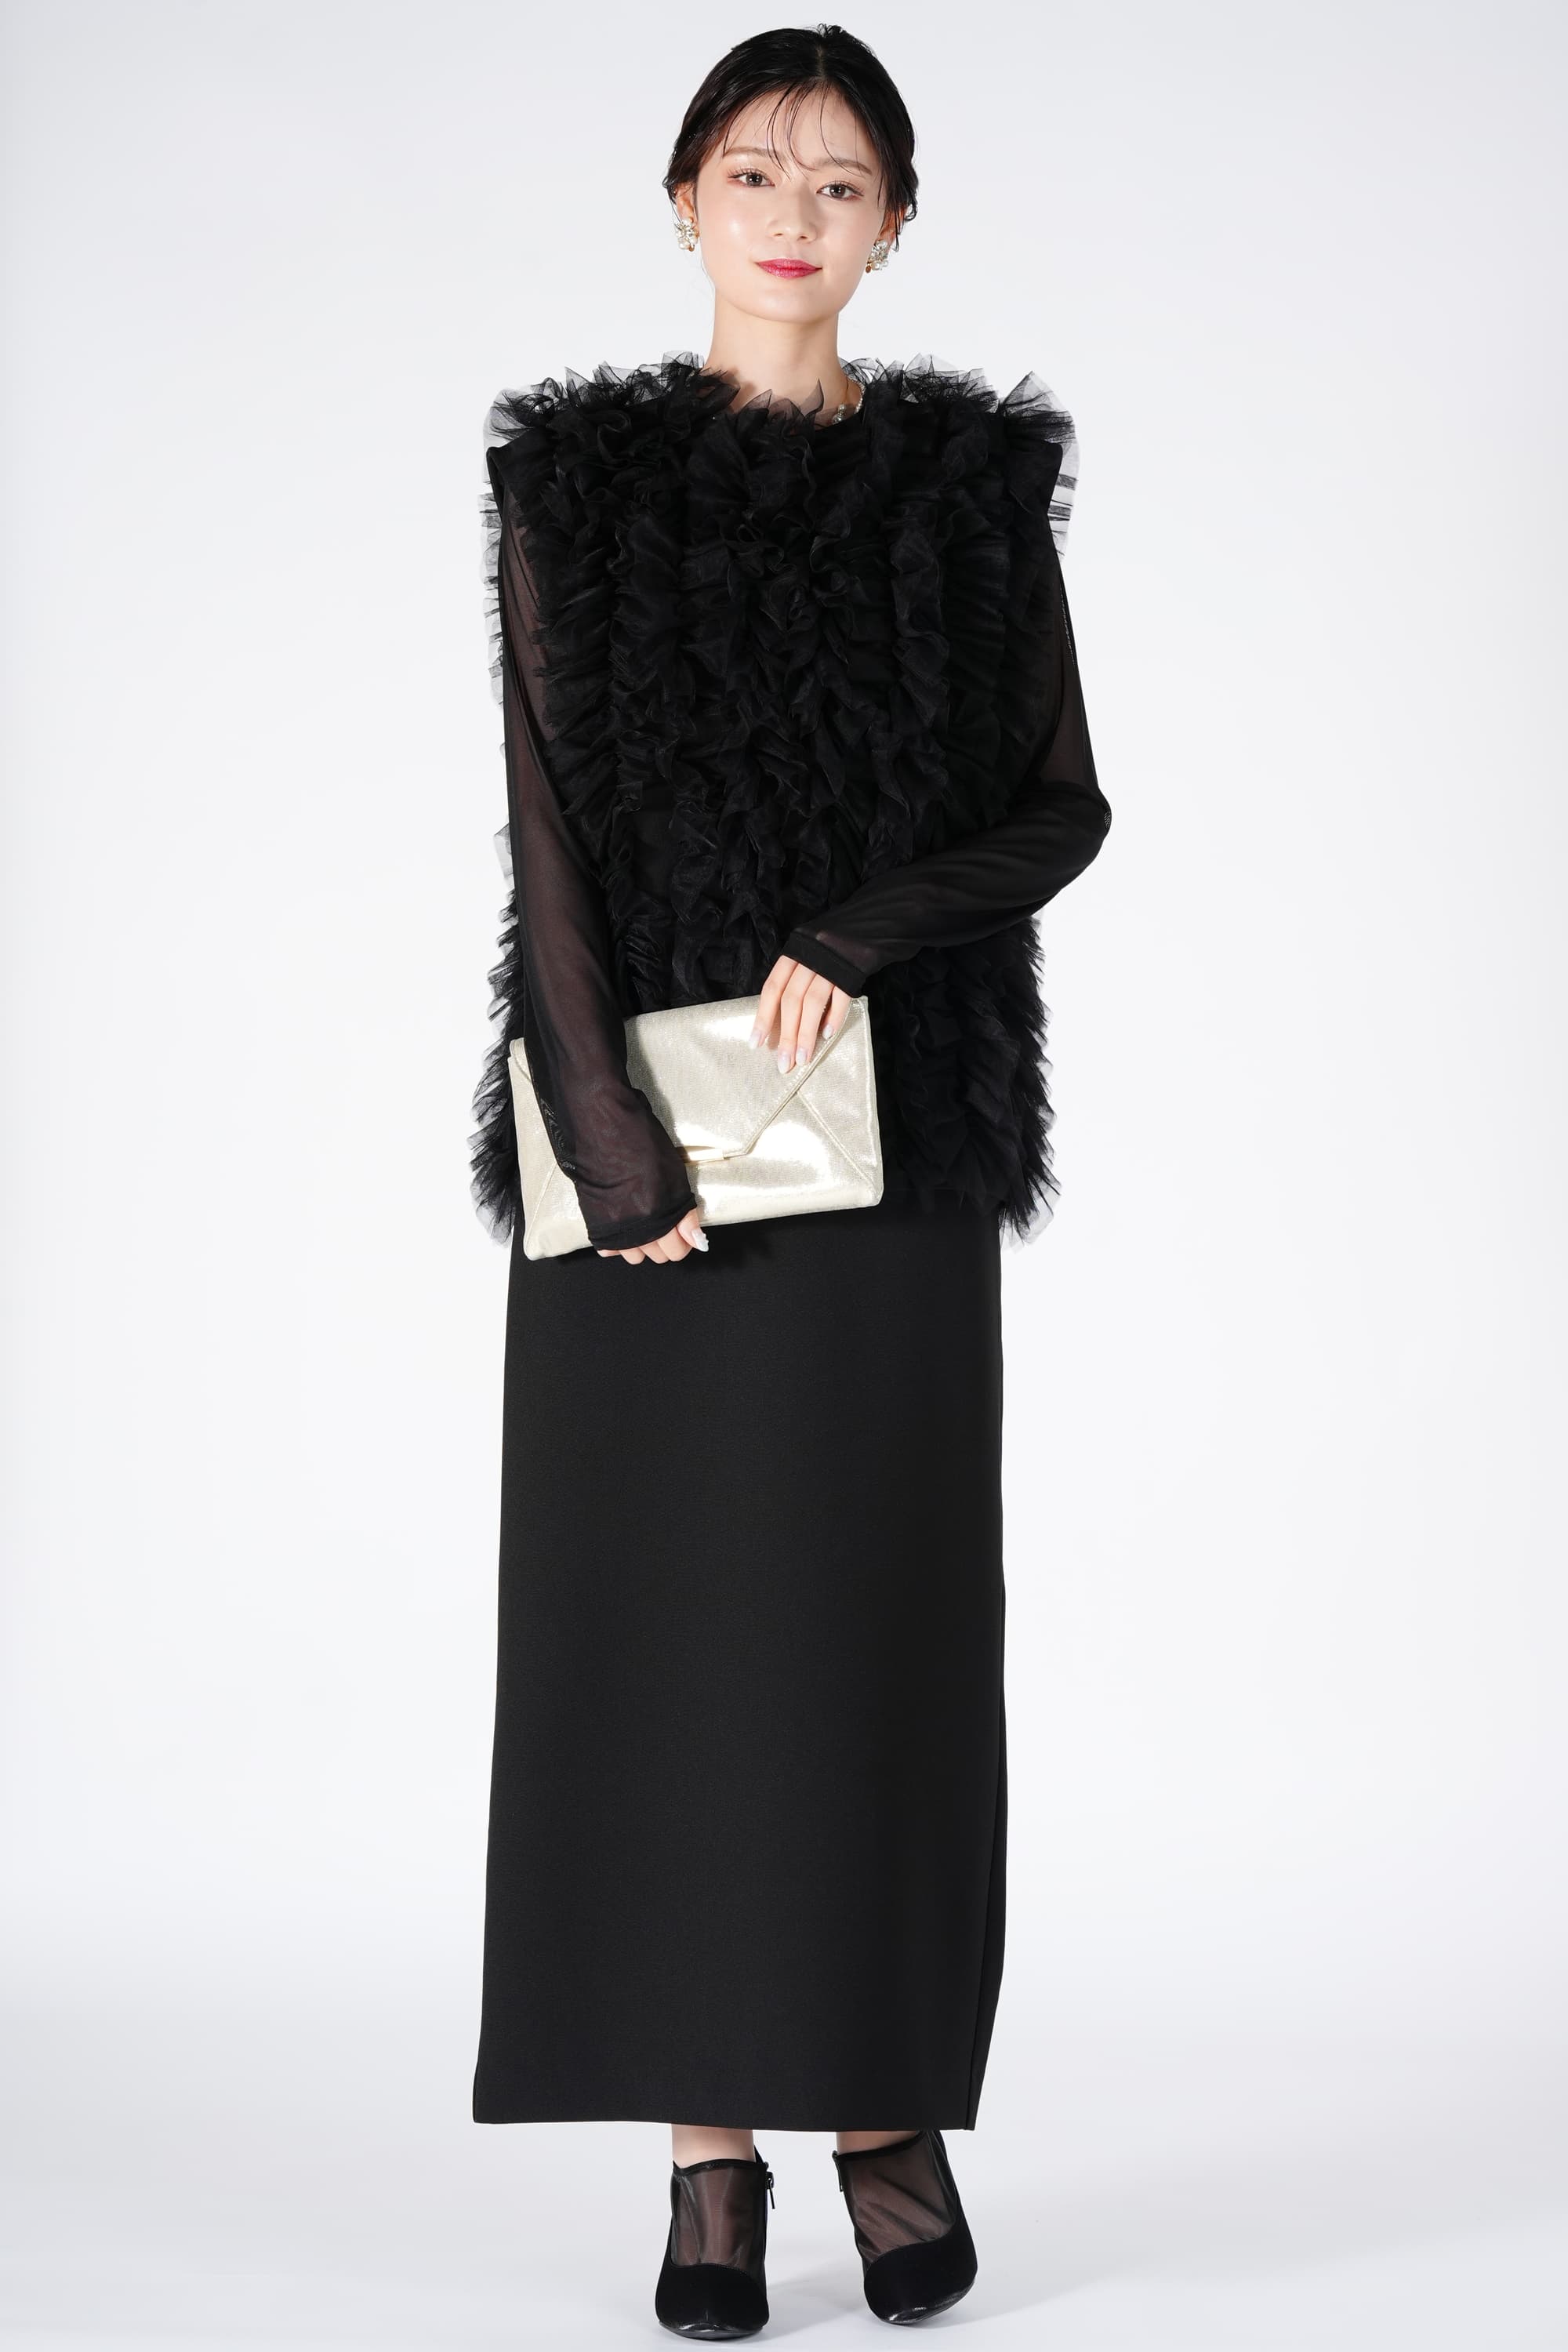 Ameri VINTAGE チュールベスト付きブラックドレス (S) をレンタル 